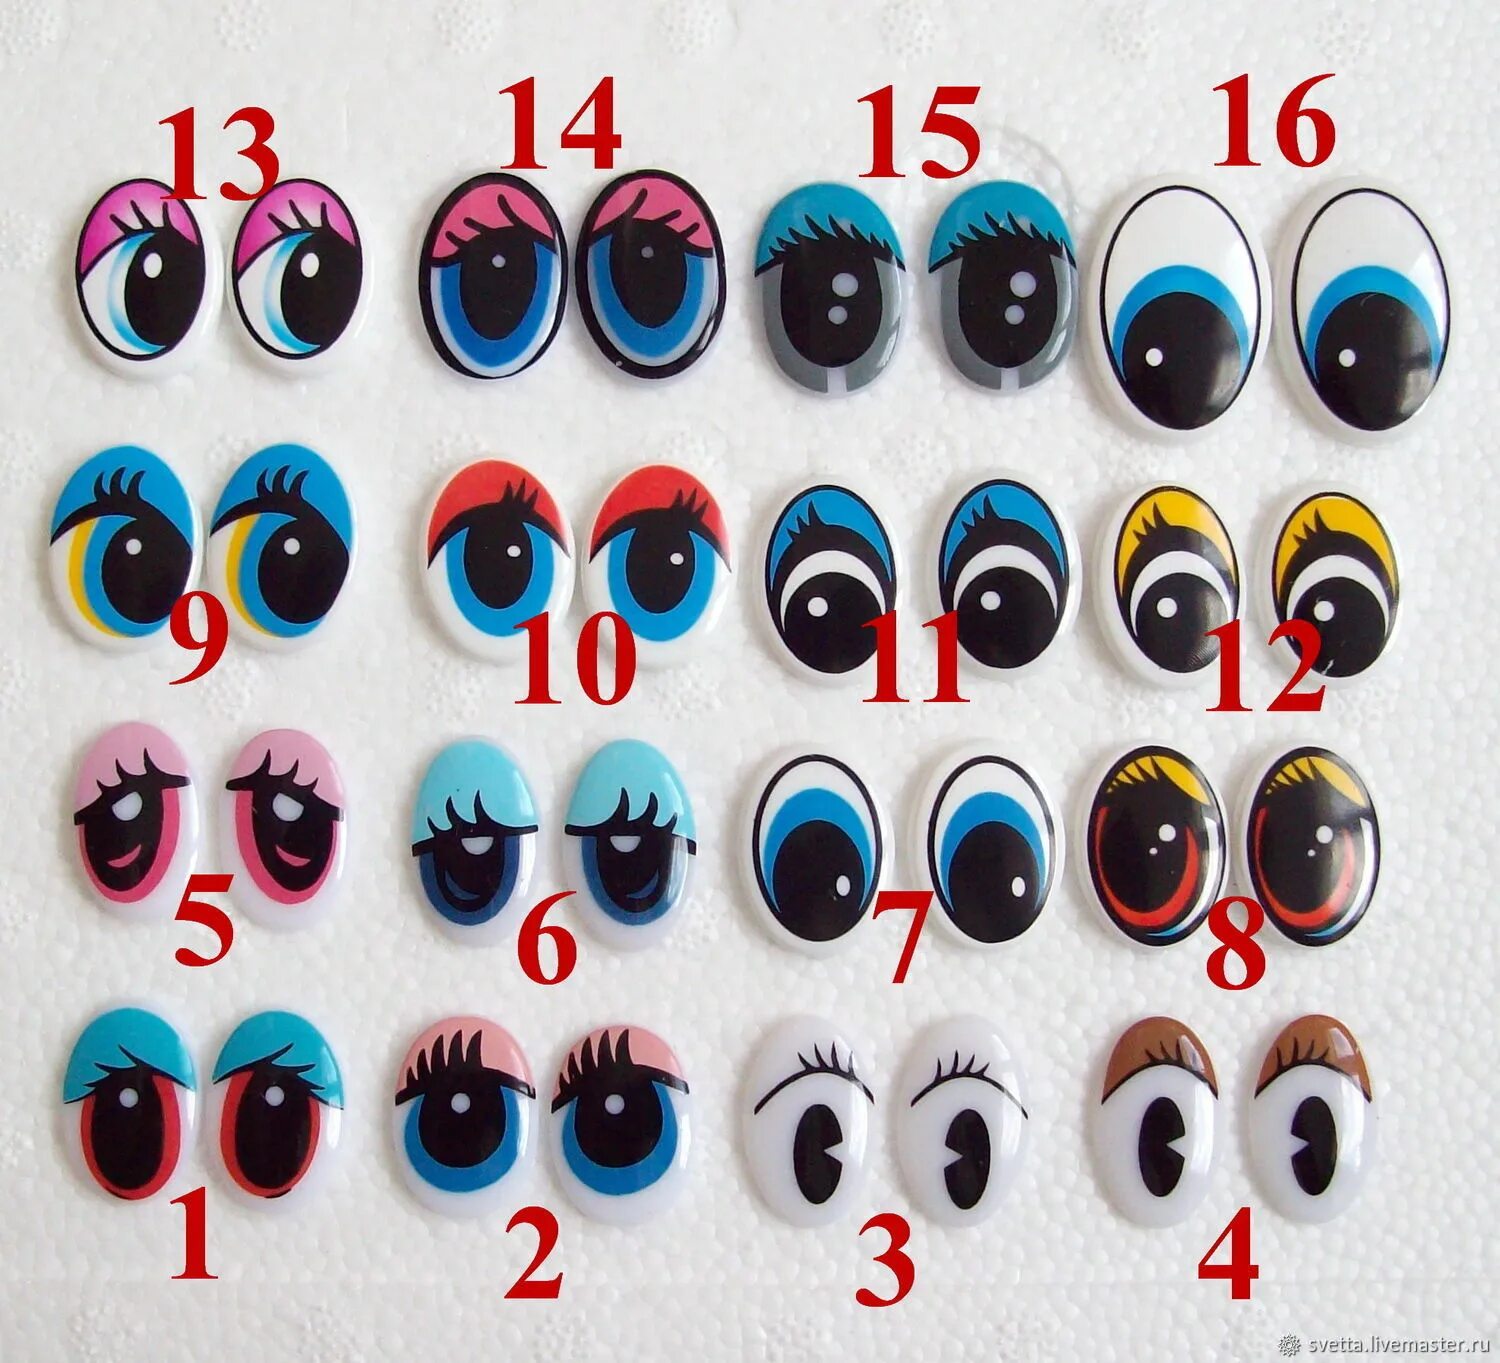 Глаза для игрушек. Глазки для поделок. Пластмассовые глаза для игрушек. Пластиковые глазки для поделок. Как вставить глазки